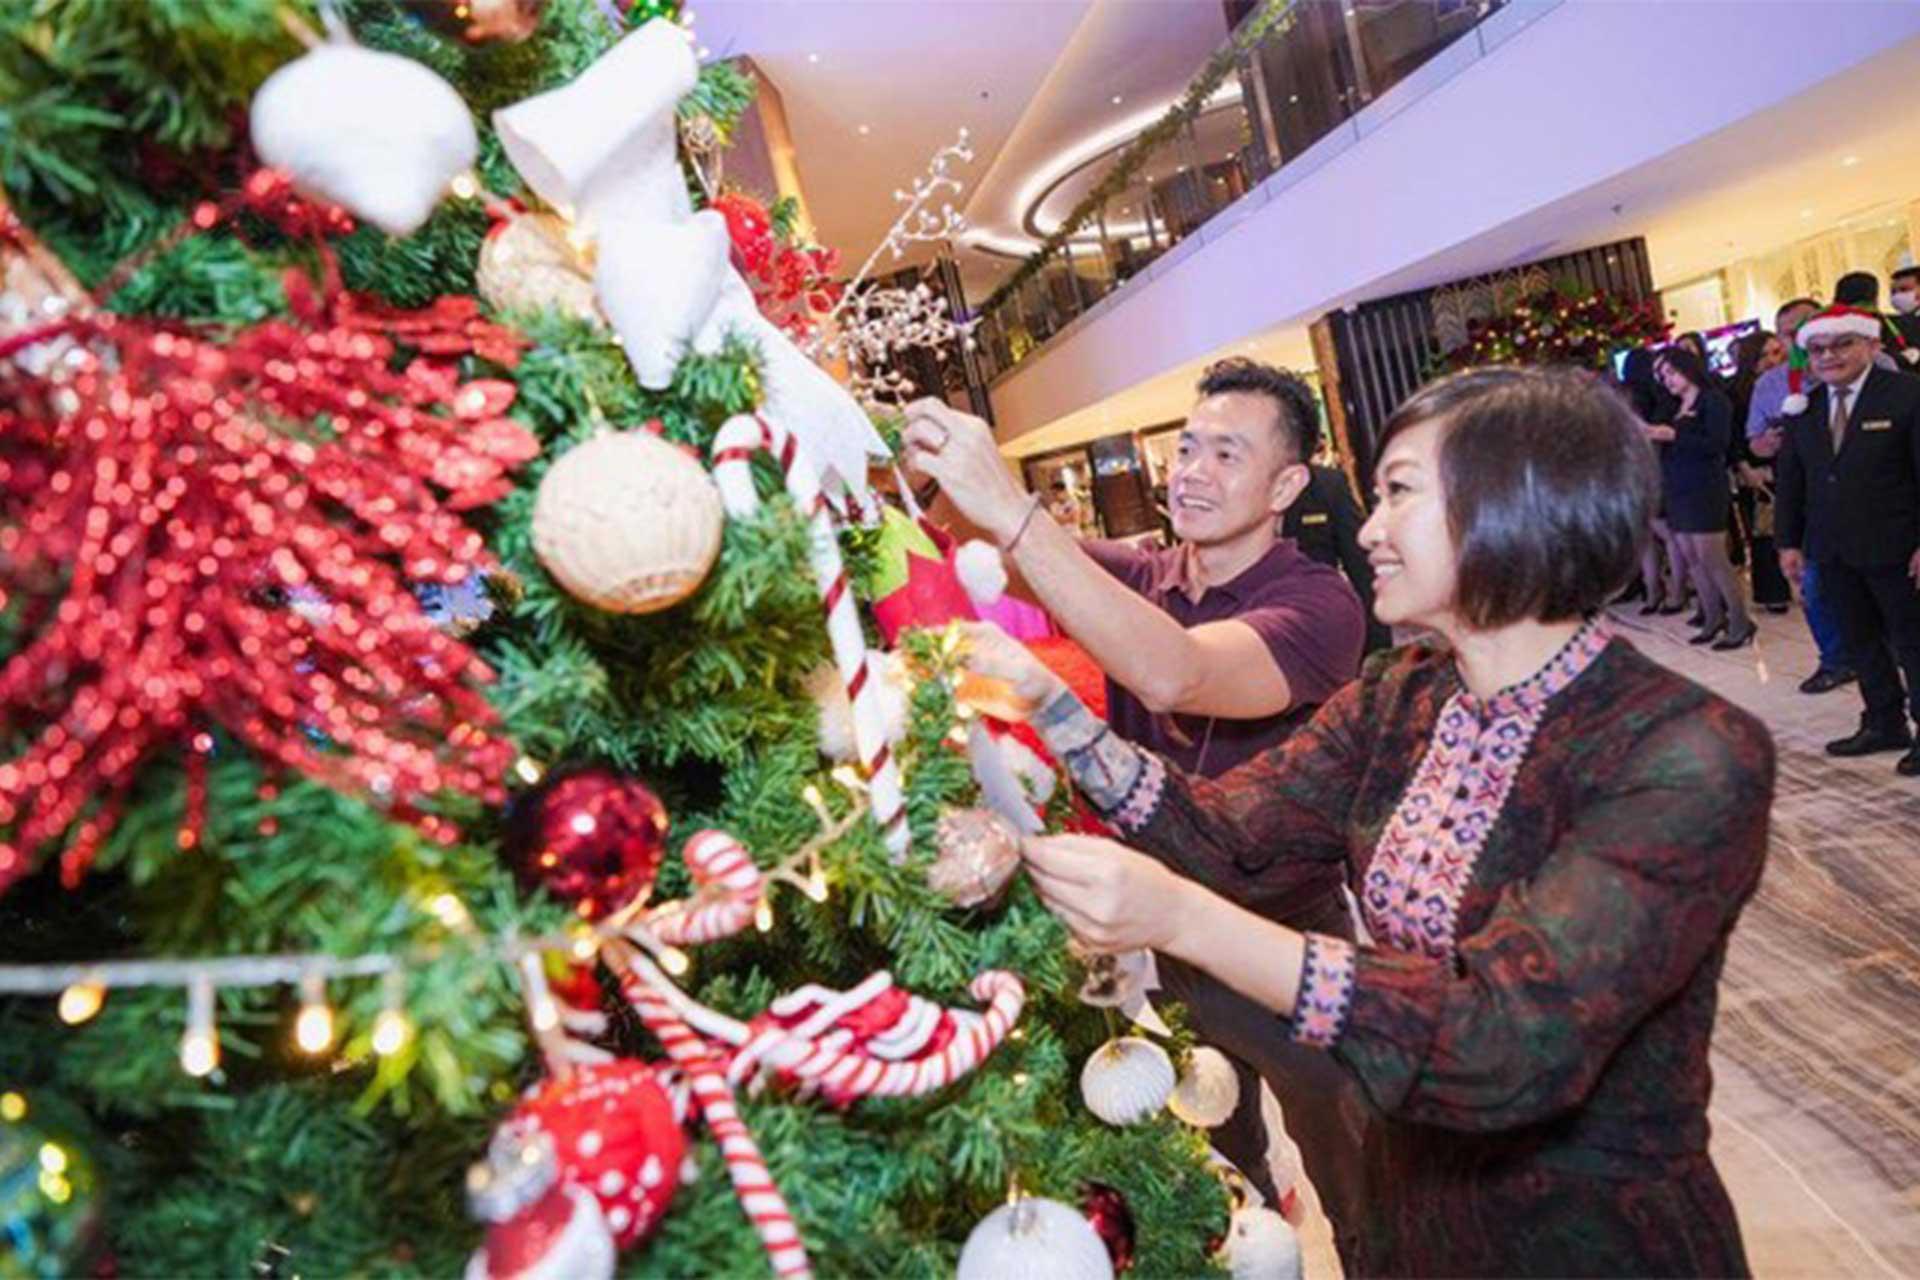 Tree Lighting Ceremony, Salah Satu Cara Industri Jasa Pelayanan di Tangerang Menyambut Perayaan Natal